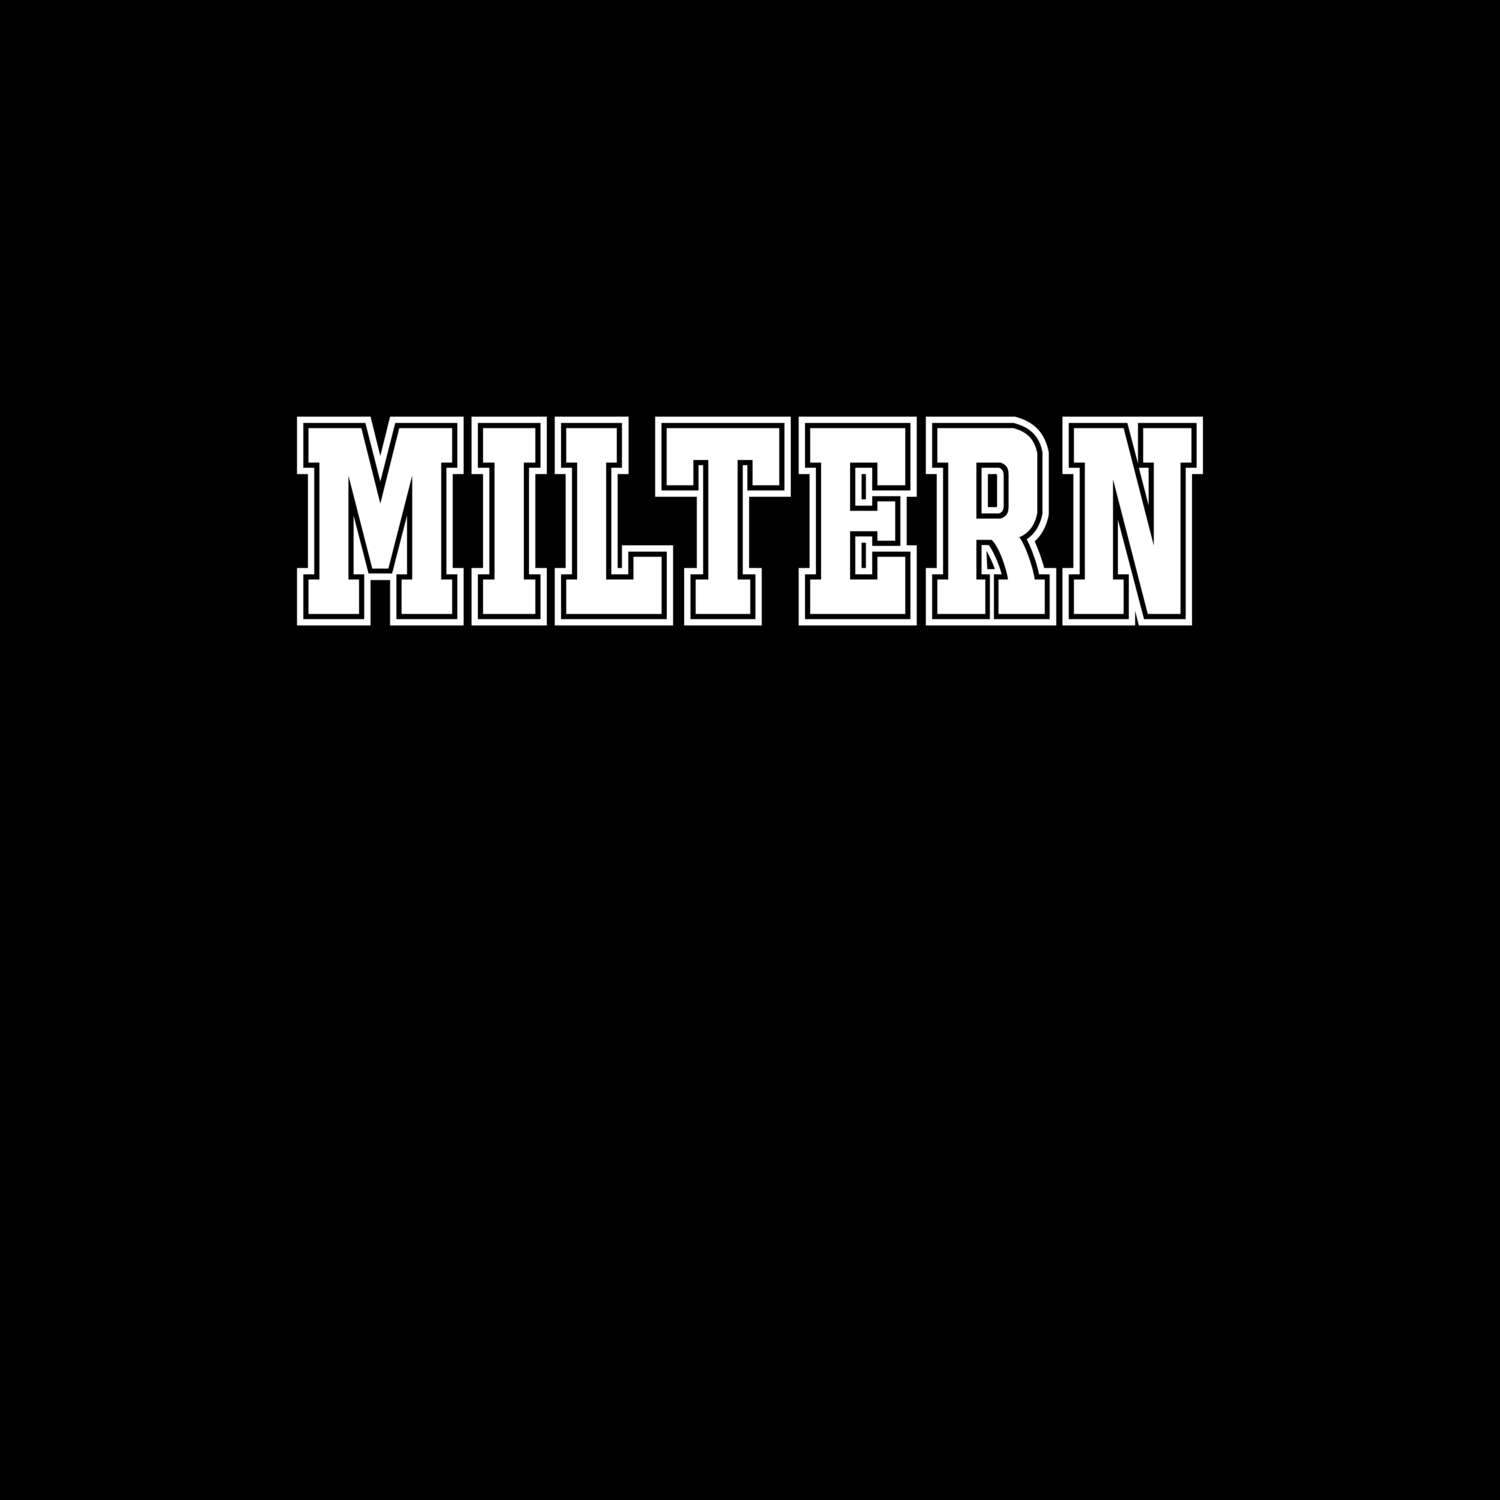 Miltern T-Shirt »Classic«